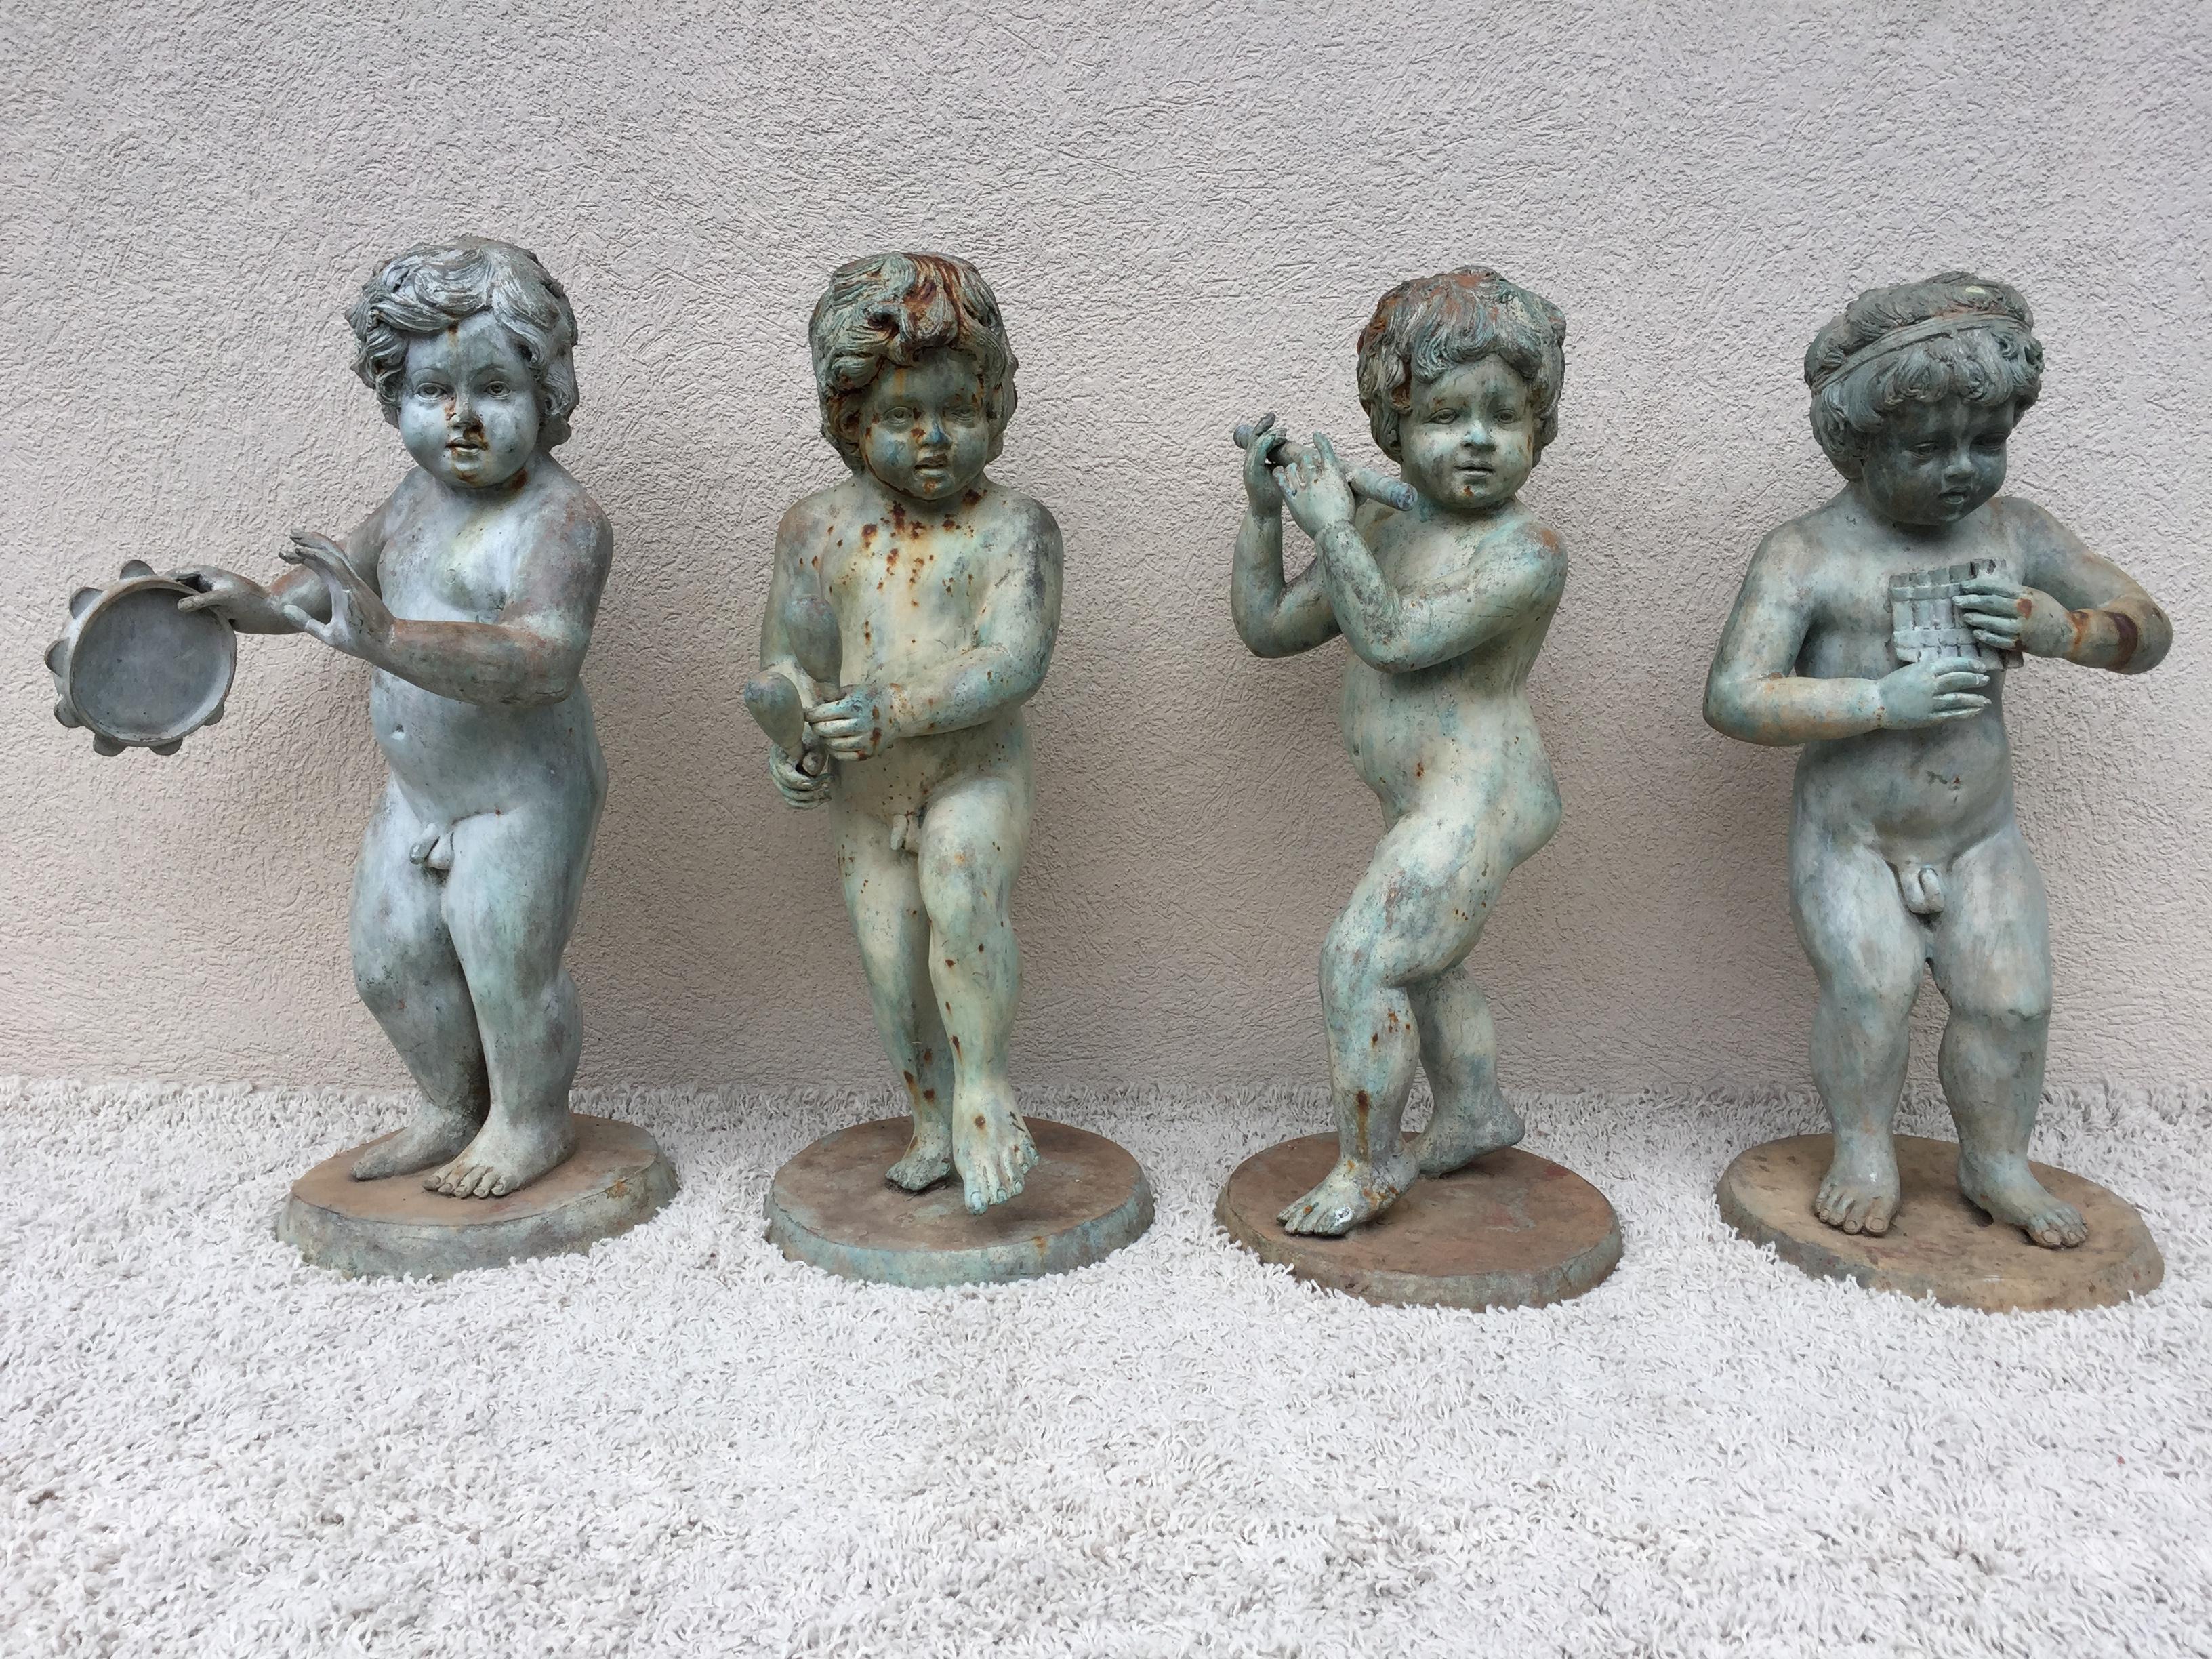 Bronze musikalischen Putten oder Cherub Garten Statuen Satz von vier, mit Original-Patina, skurrilen klassischen 1930er Jahren. Messung von 13 entspricht der Basis, sie sind 17-18 Durchmesser.